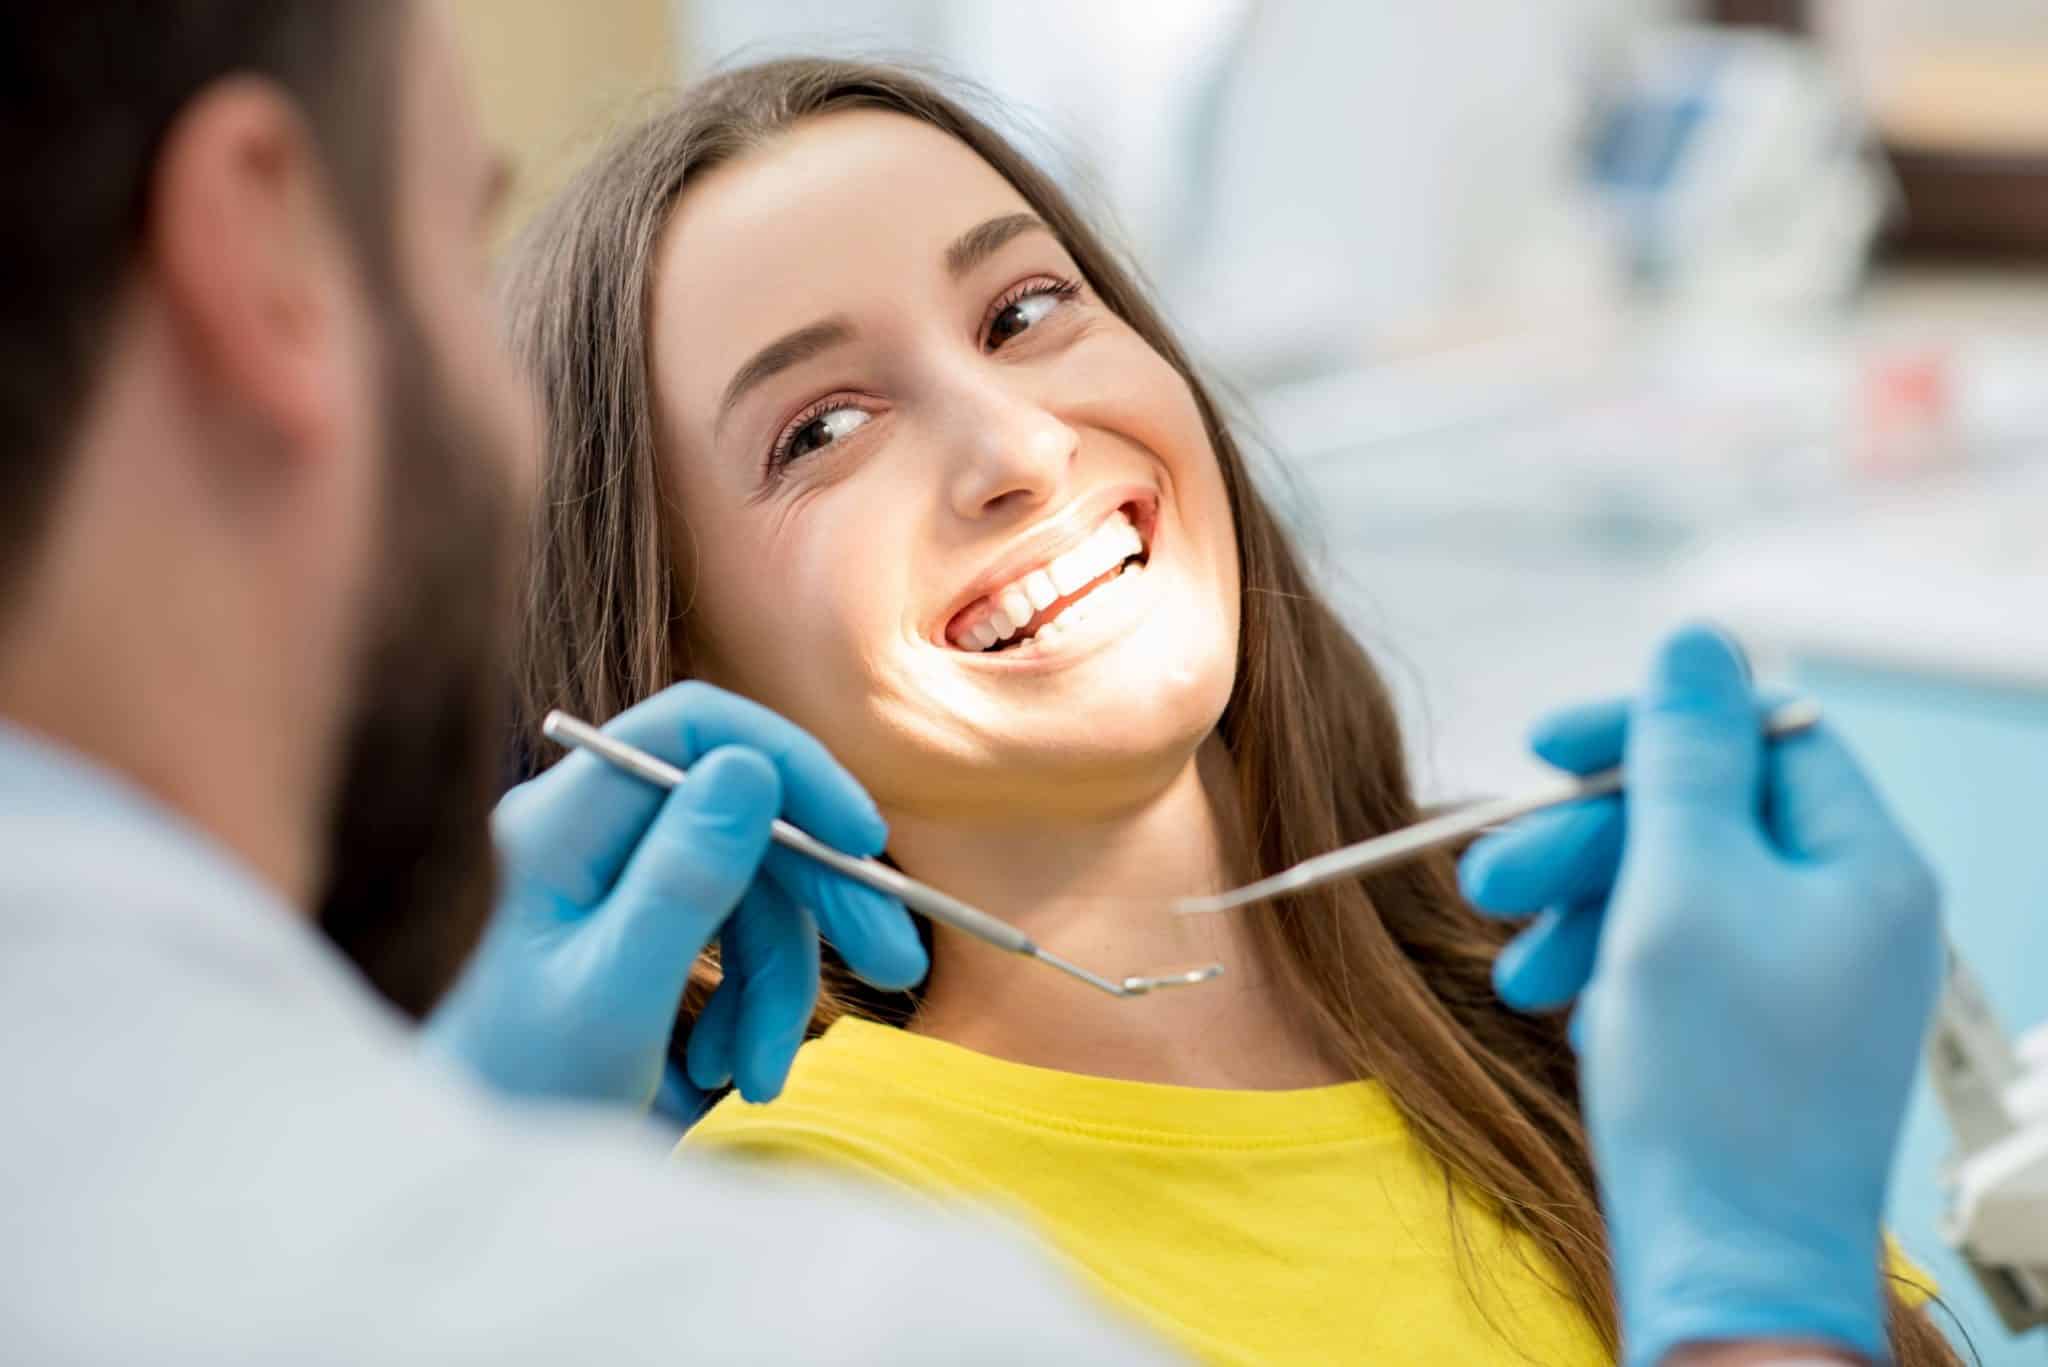 Ästhetische Zahnmedizin Dr. Geiger